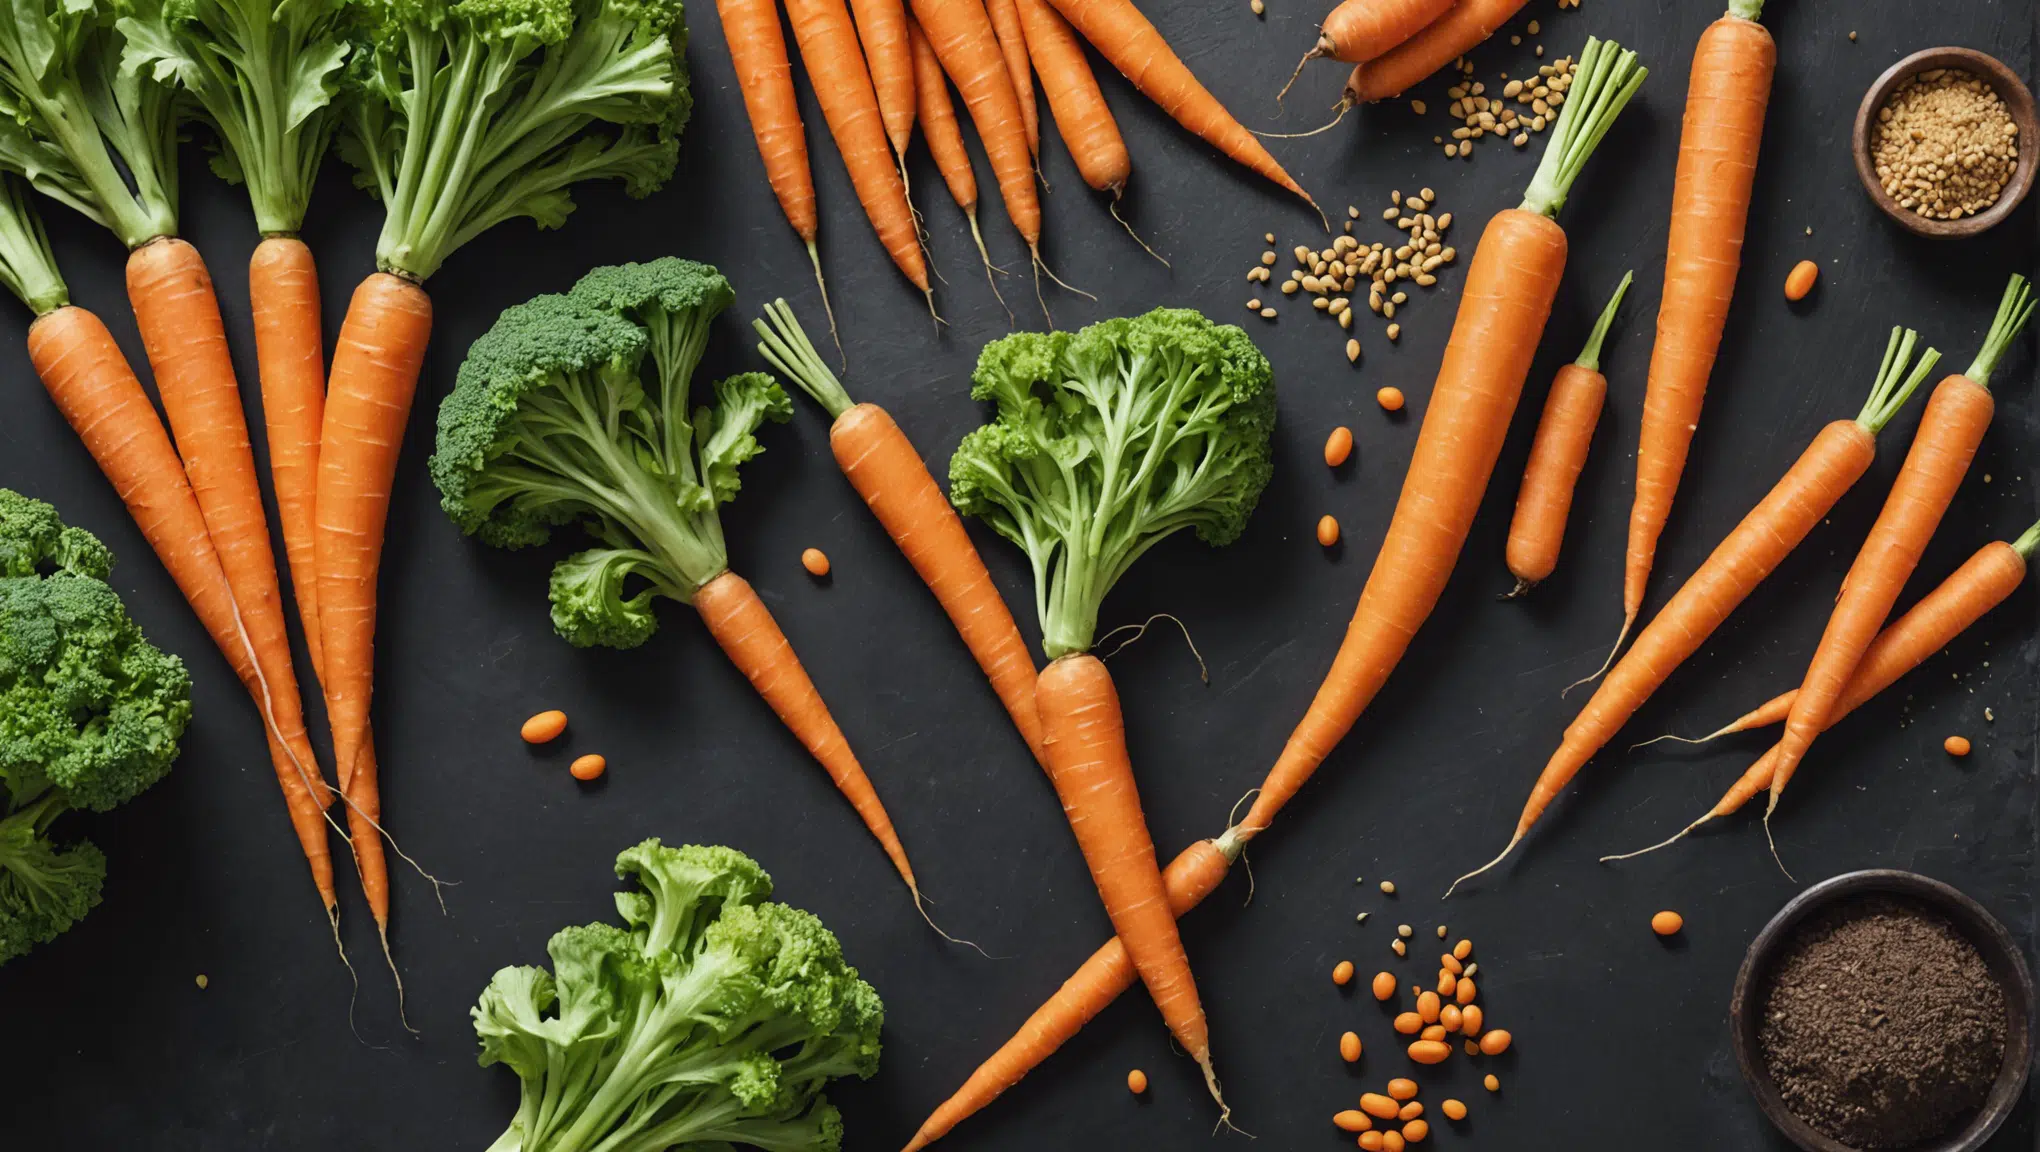 découvrez les facteurs favorisant ou limitant la croissance de la carotte et leurs impacts sur la qualité du légume. trouvez des conseils pour optimiser la culture de la carotte dans votre jardin.